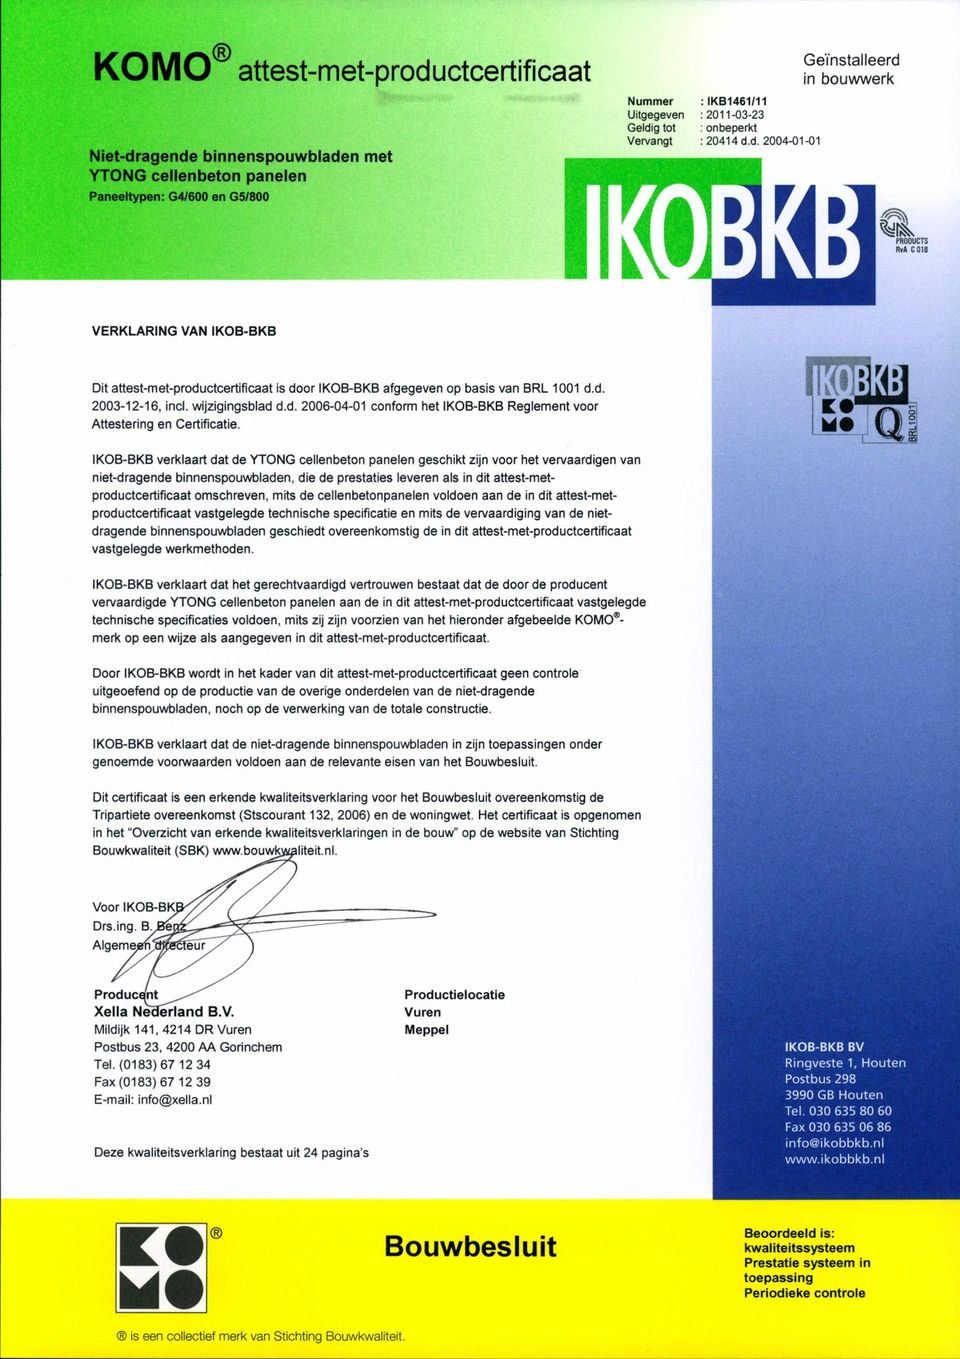 wijzigingsblad d.d. 2006-04-01 conform het KOB-BKB Reglement voor Attestering en Certificatie.